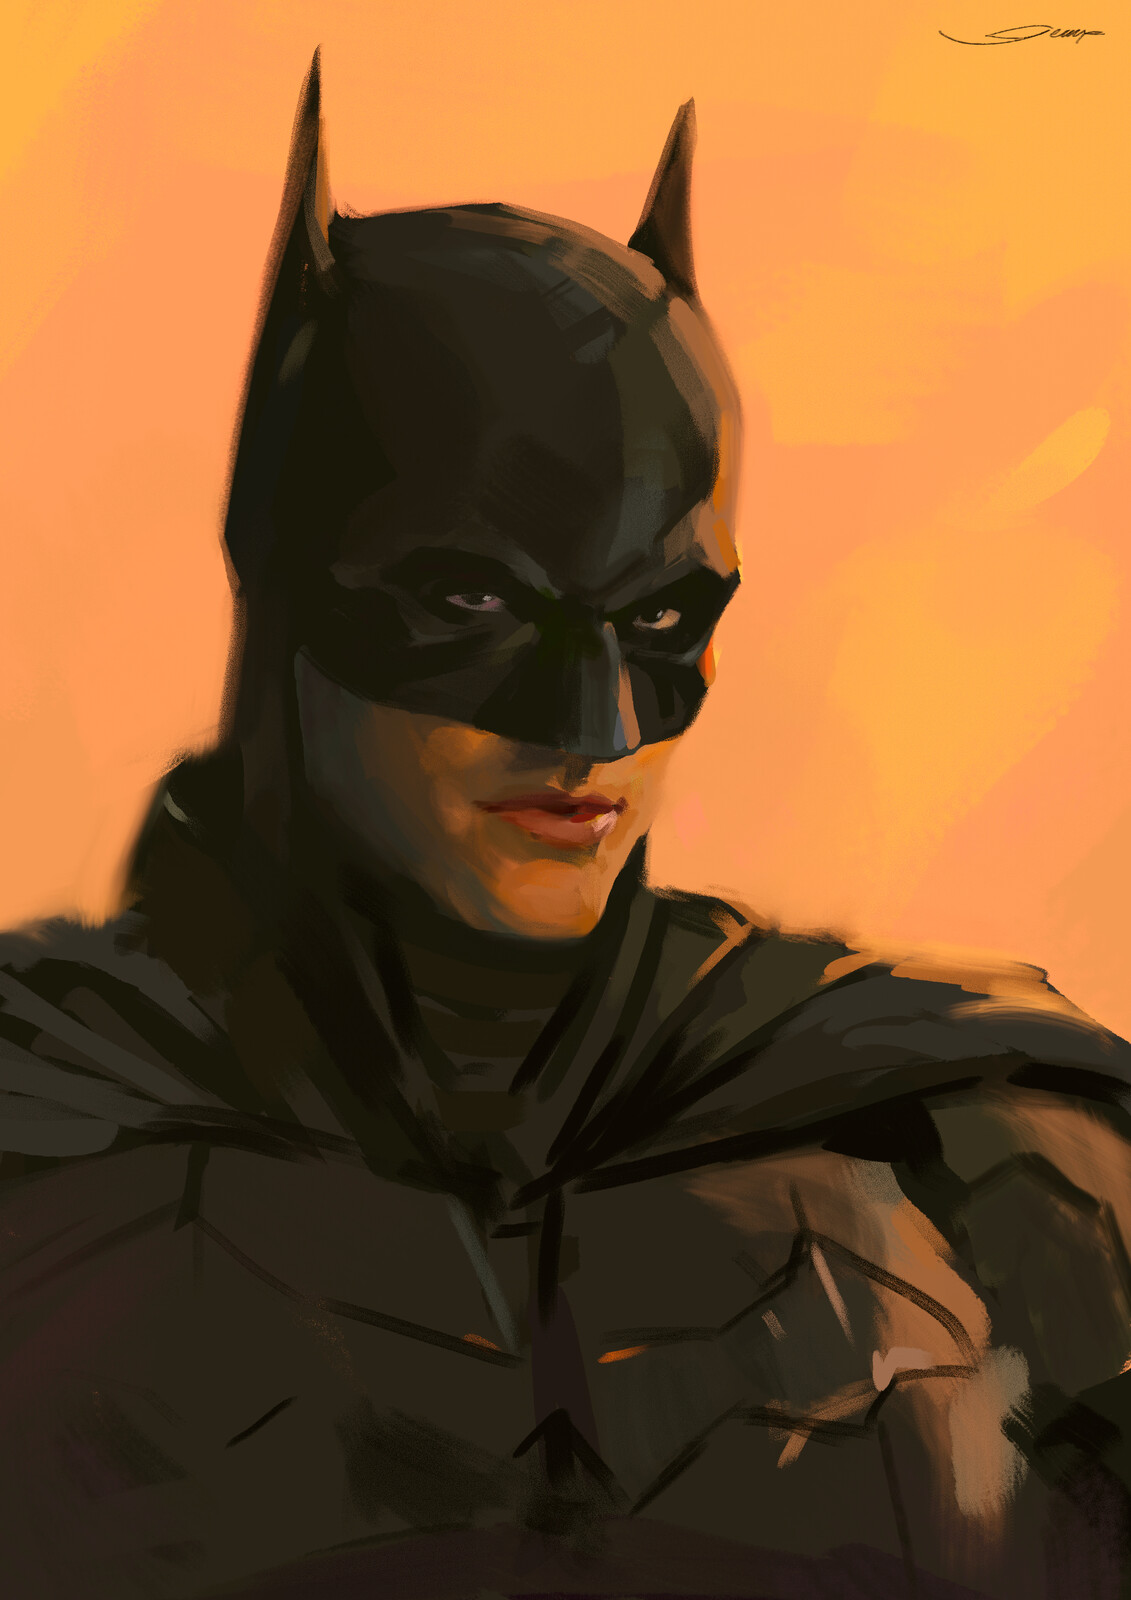 The Batman/Portrait study